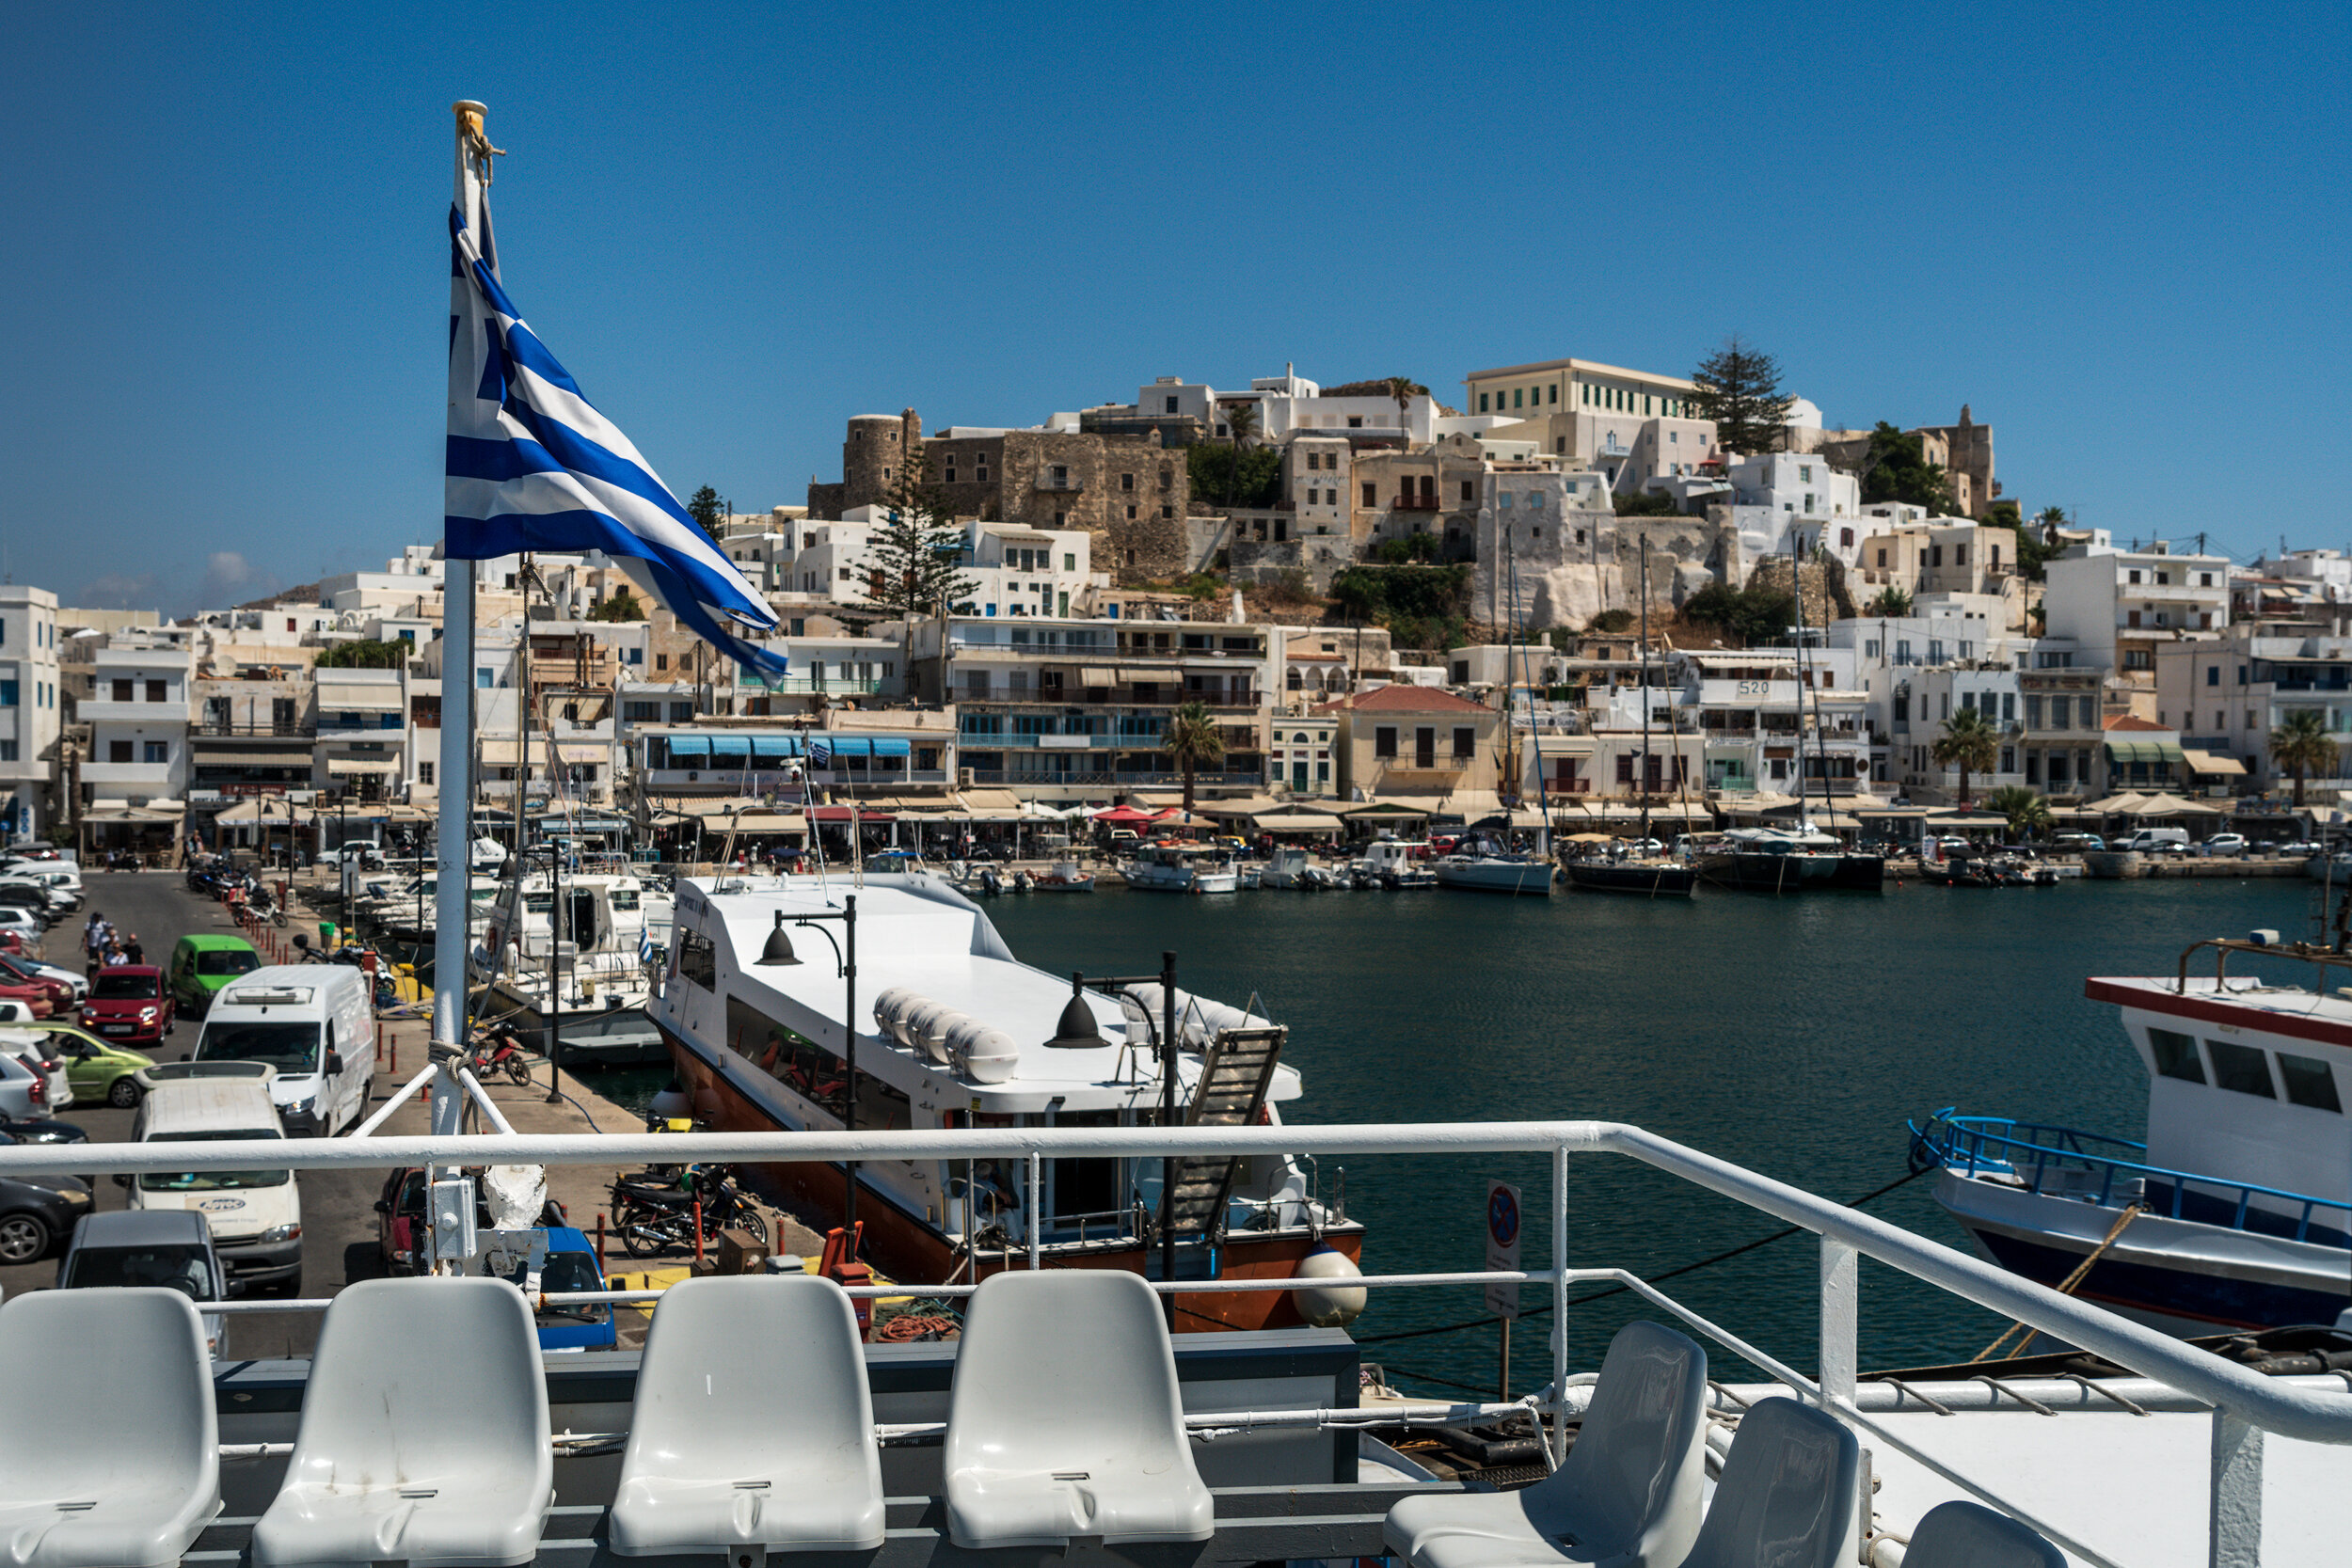 Naxos-Travel-Photography-Vasilis-Moustakas (1).jpg